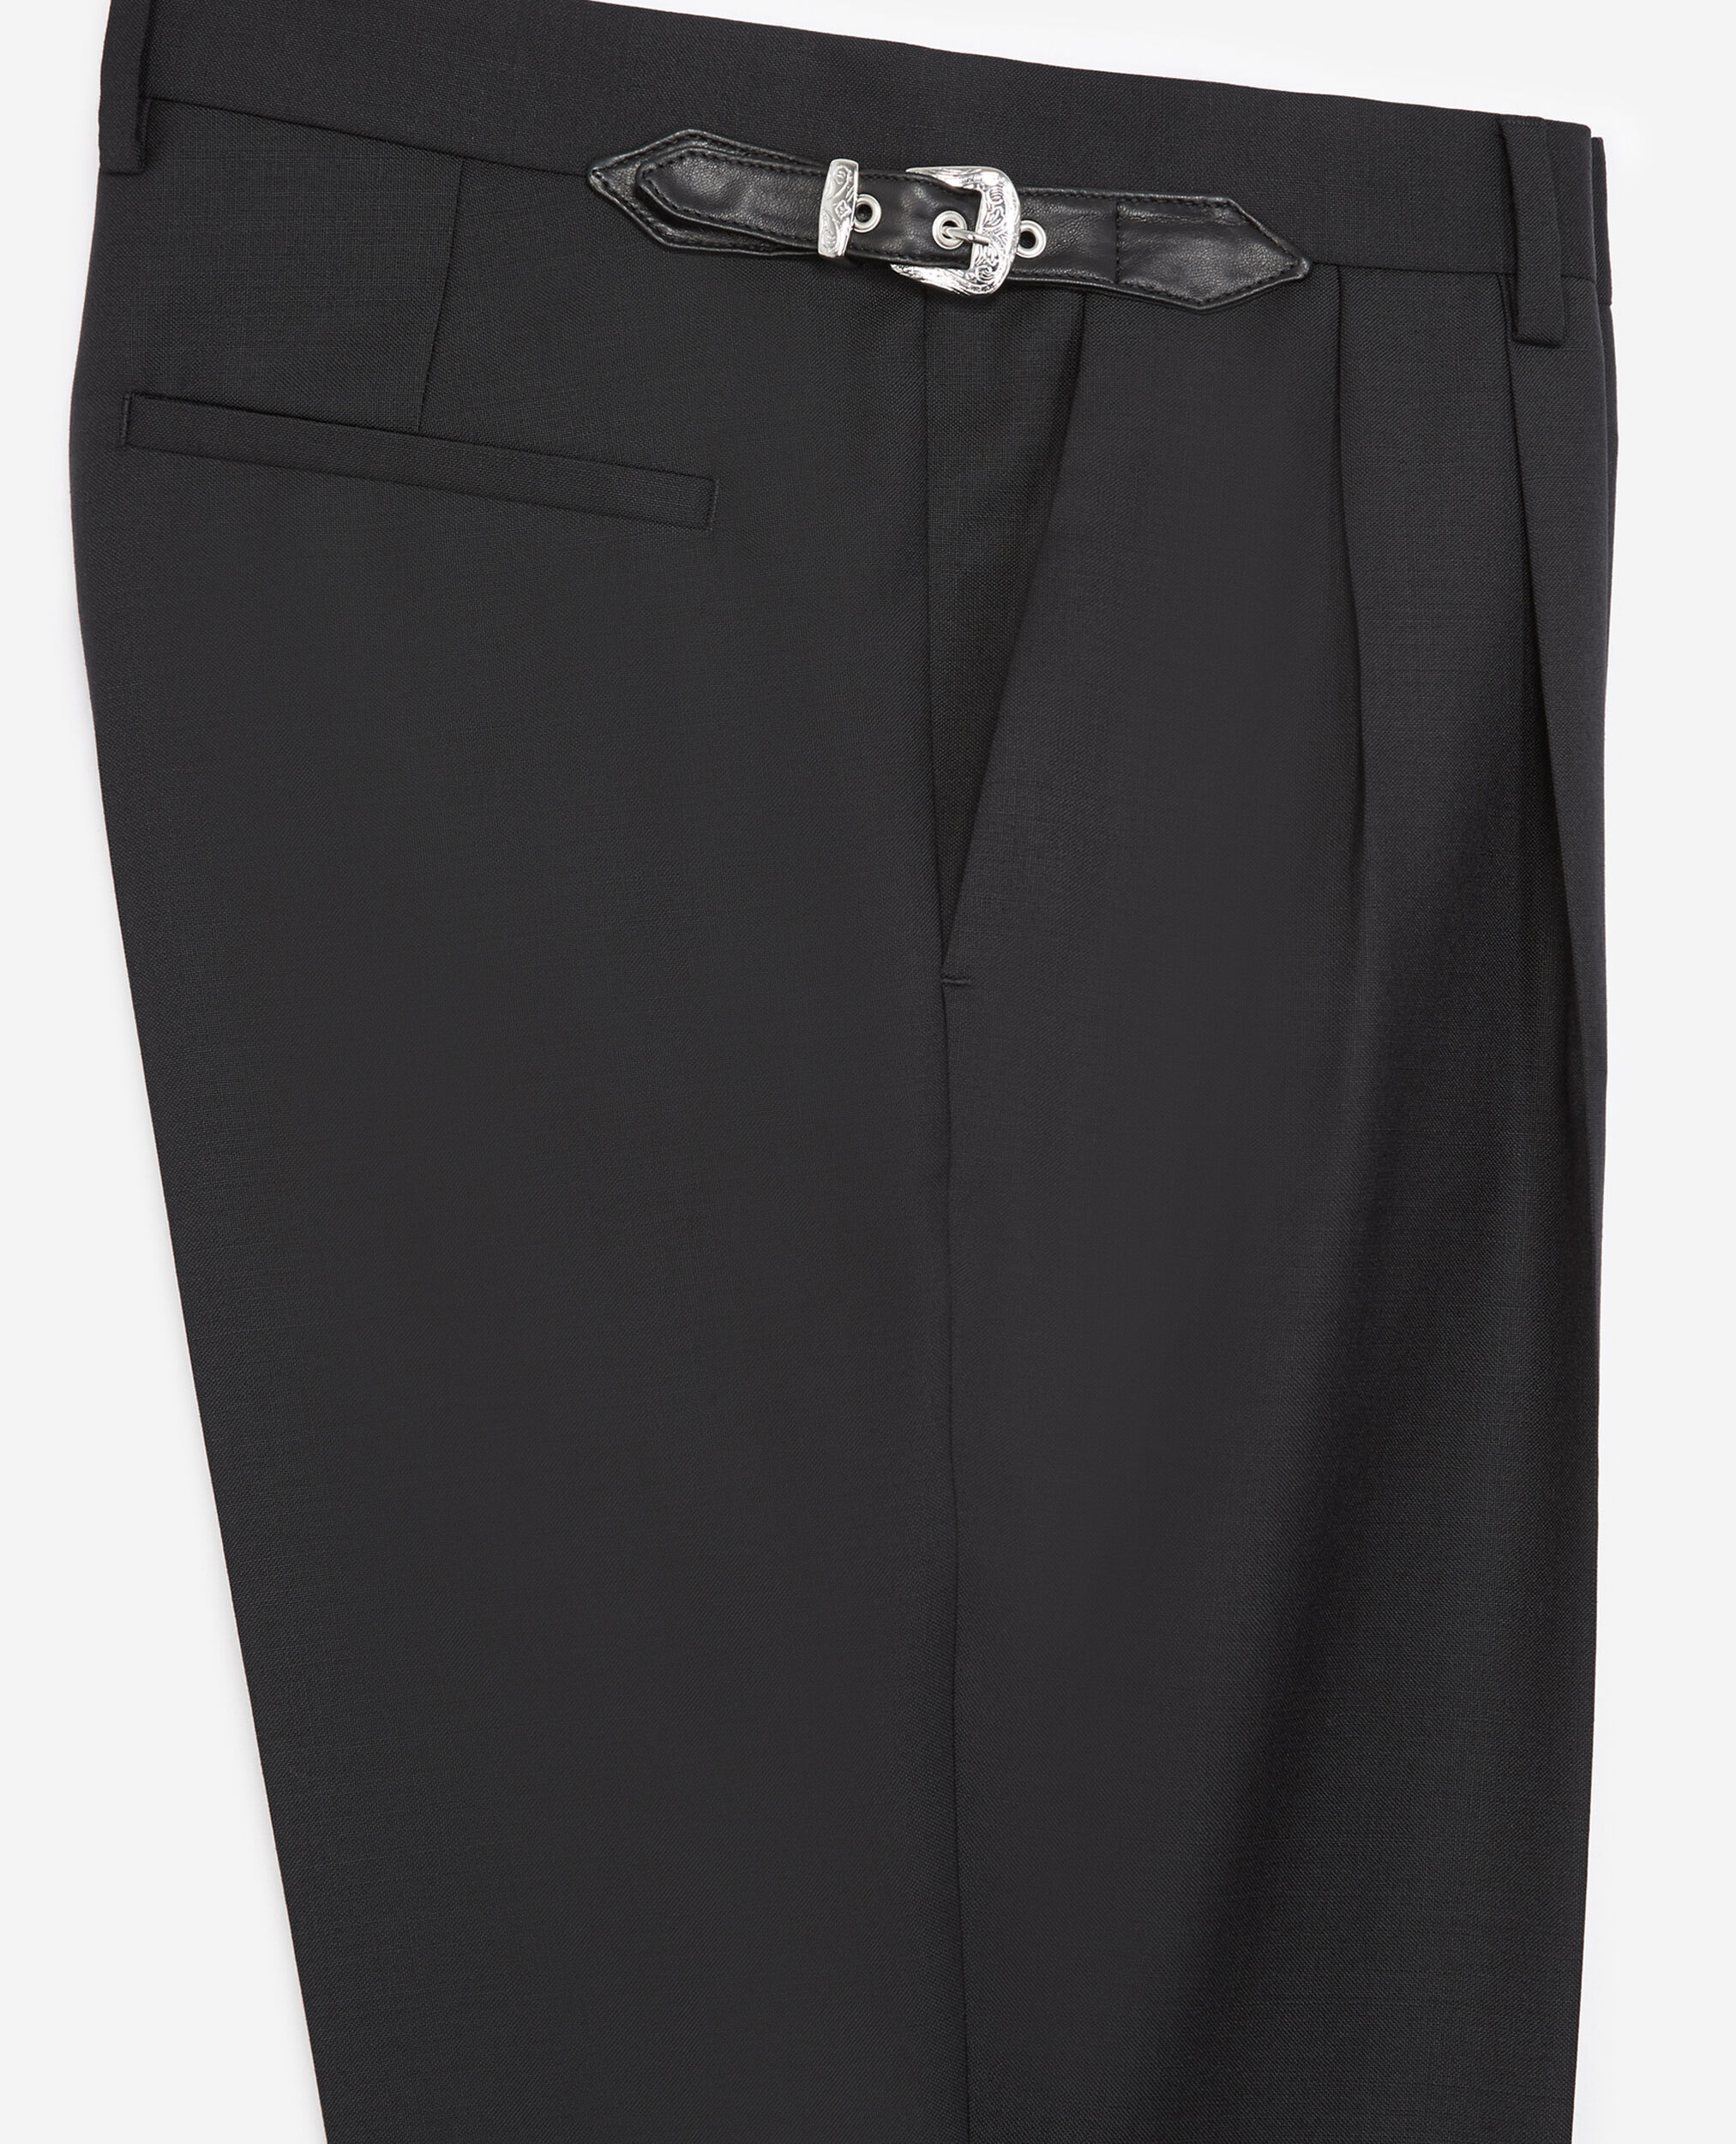 Pantalon laine noir à ceinture western, BLACK, hi-res image number null